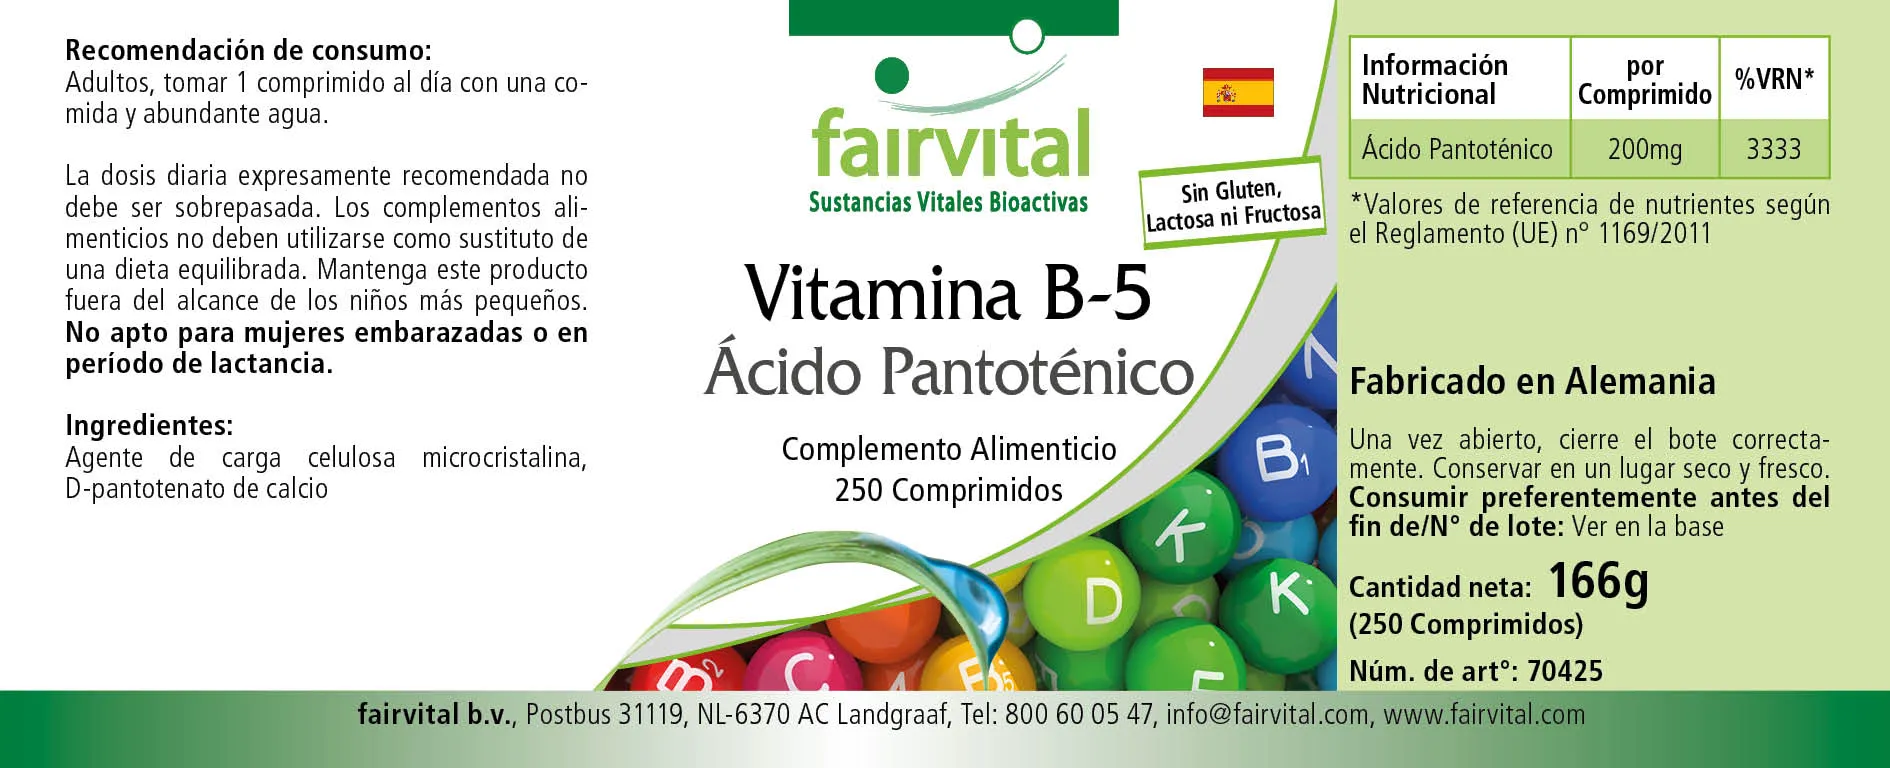 Vitamin B-5 Pantothensäure 200mg